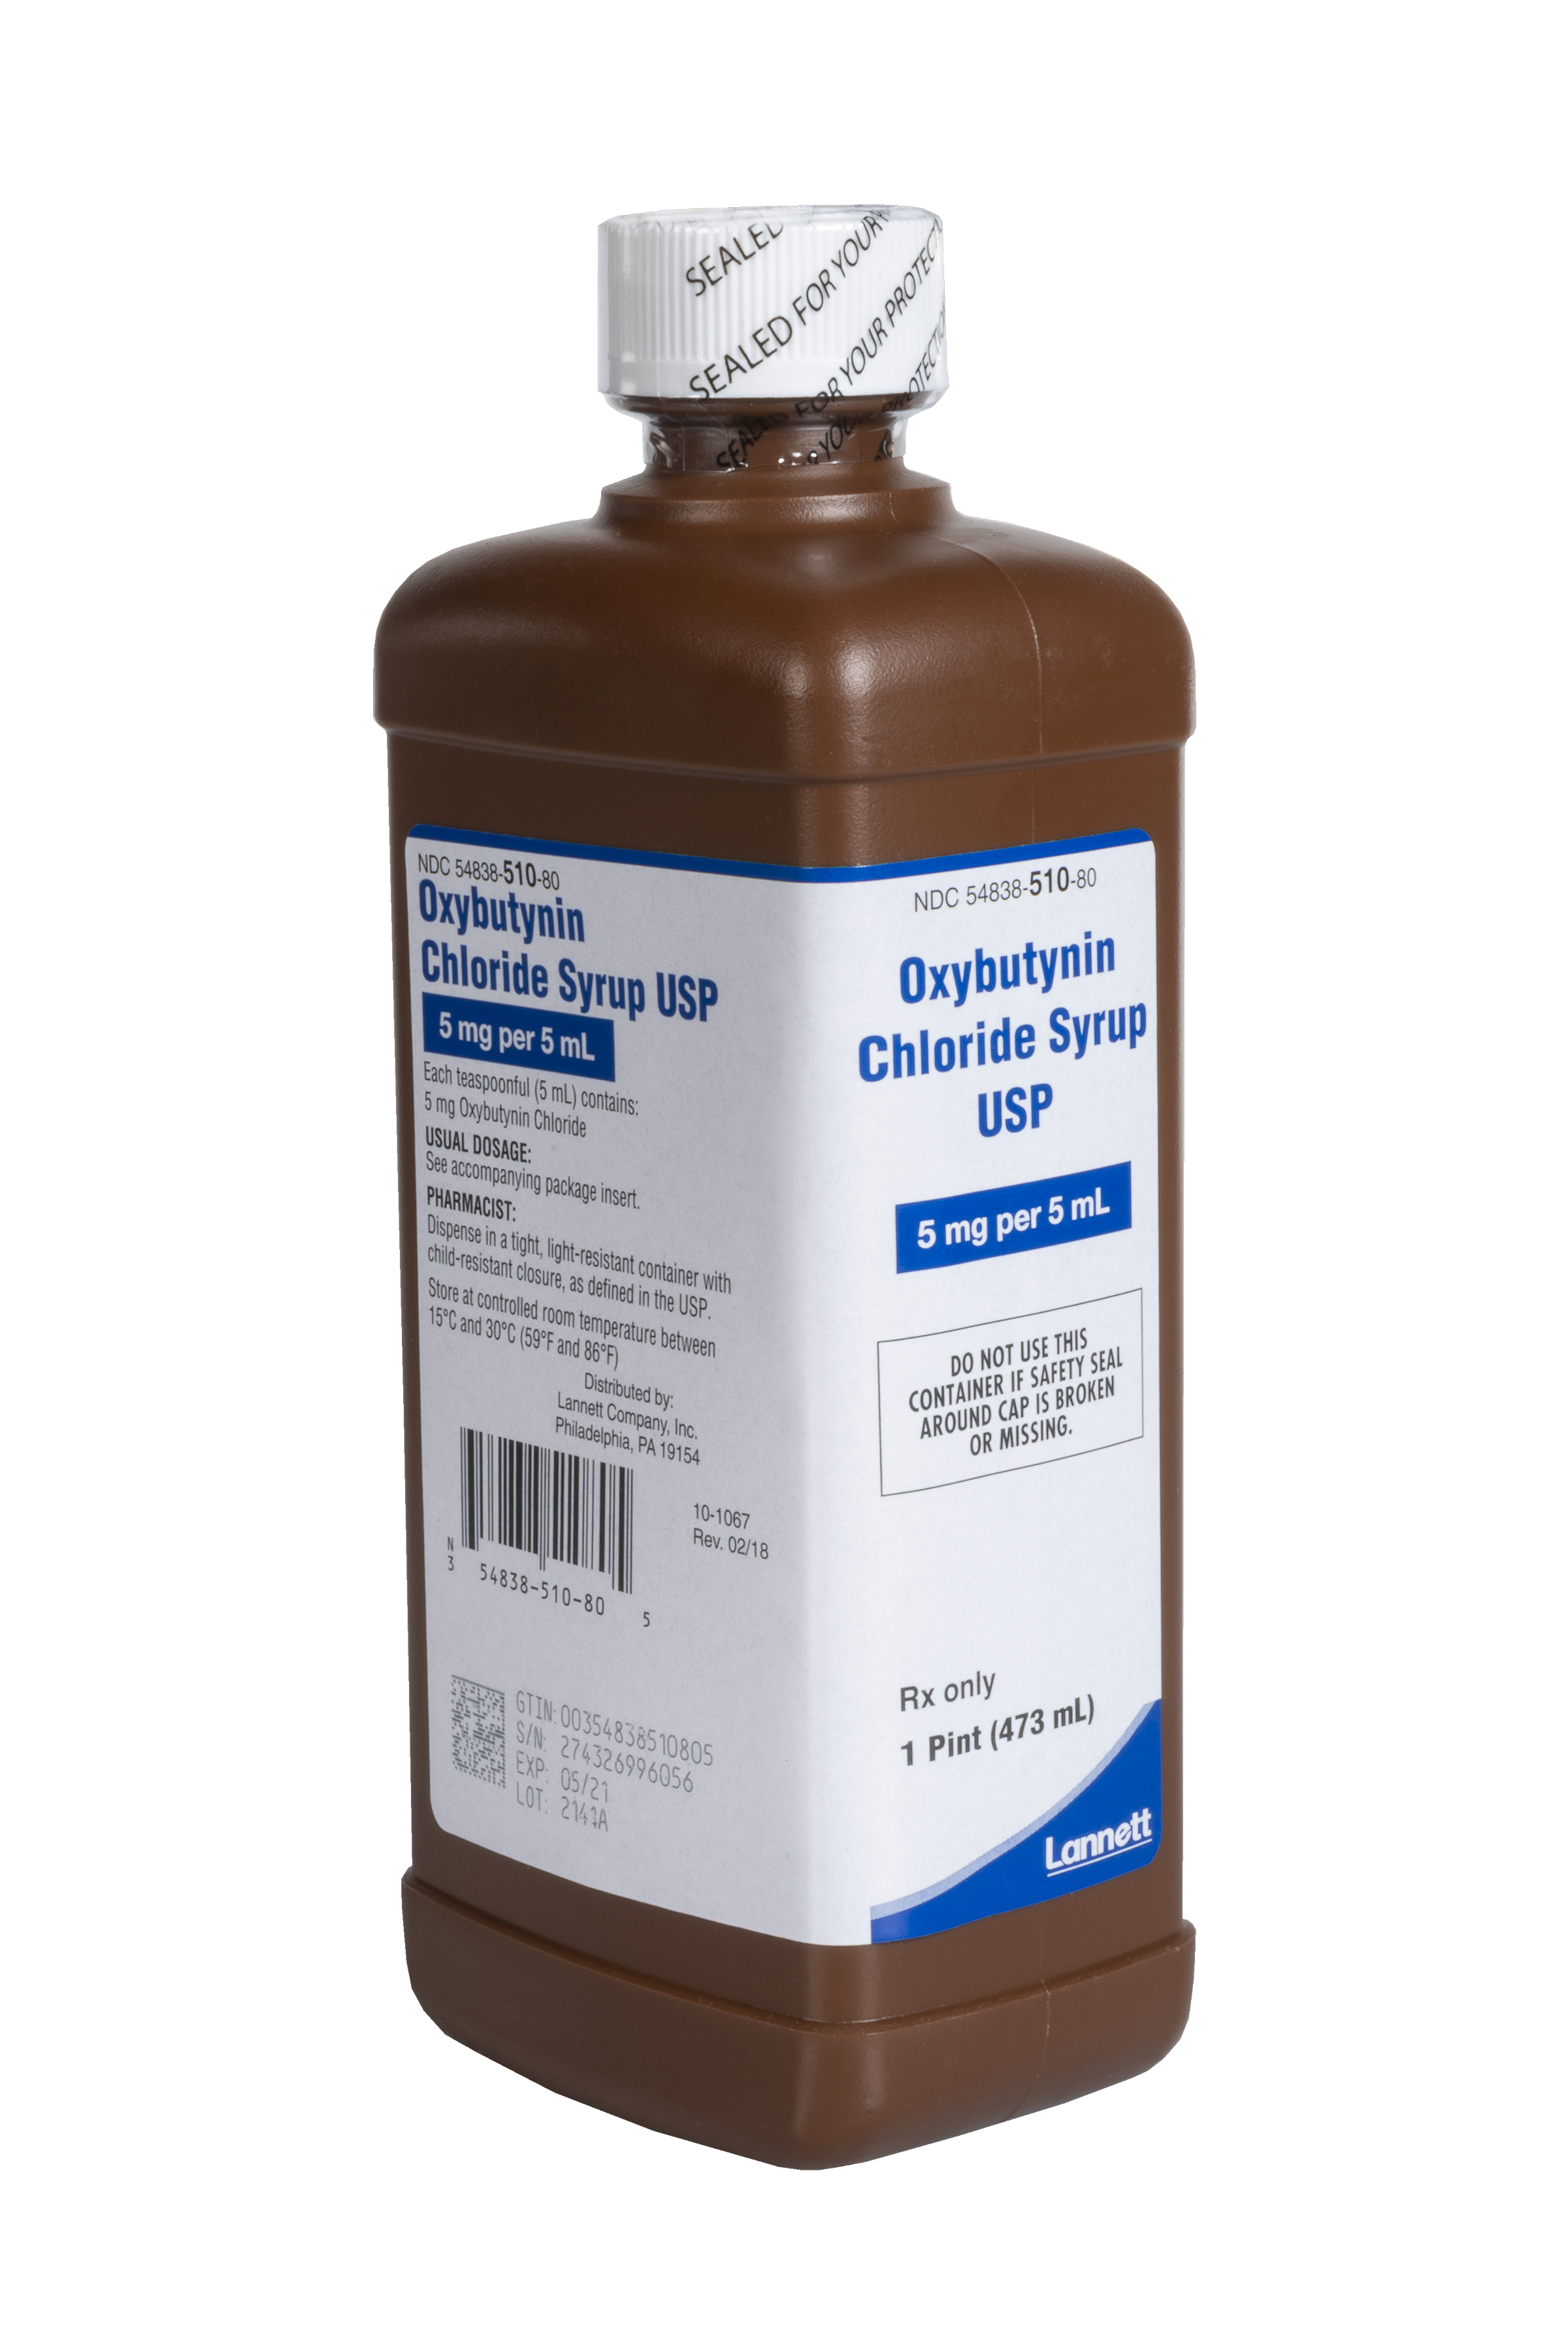 Oxybutynin Chloride Syrup